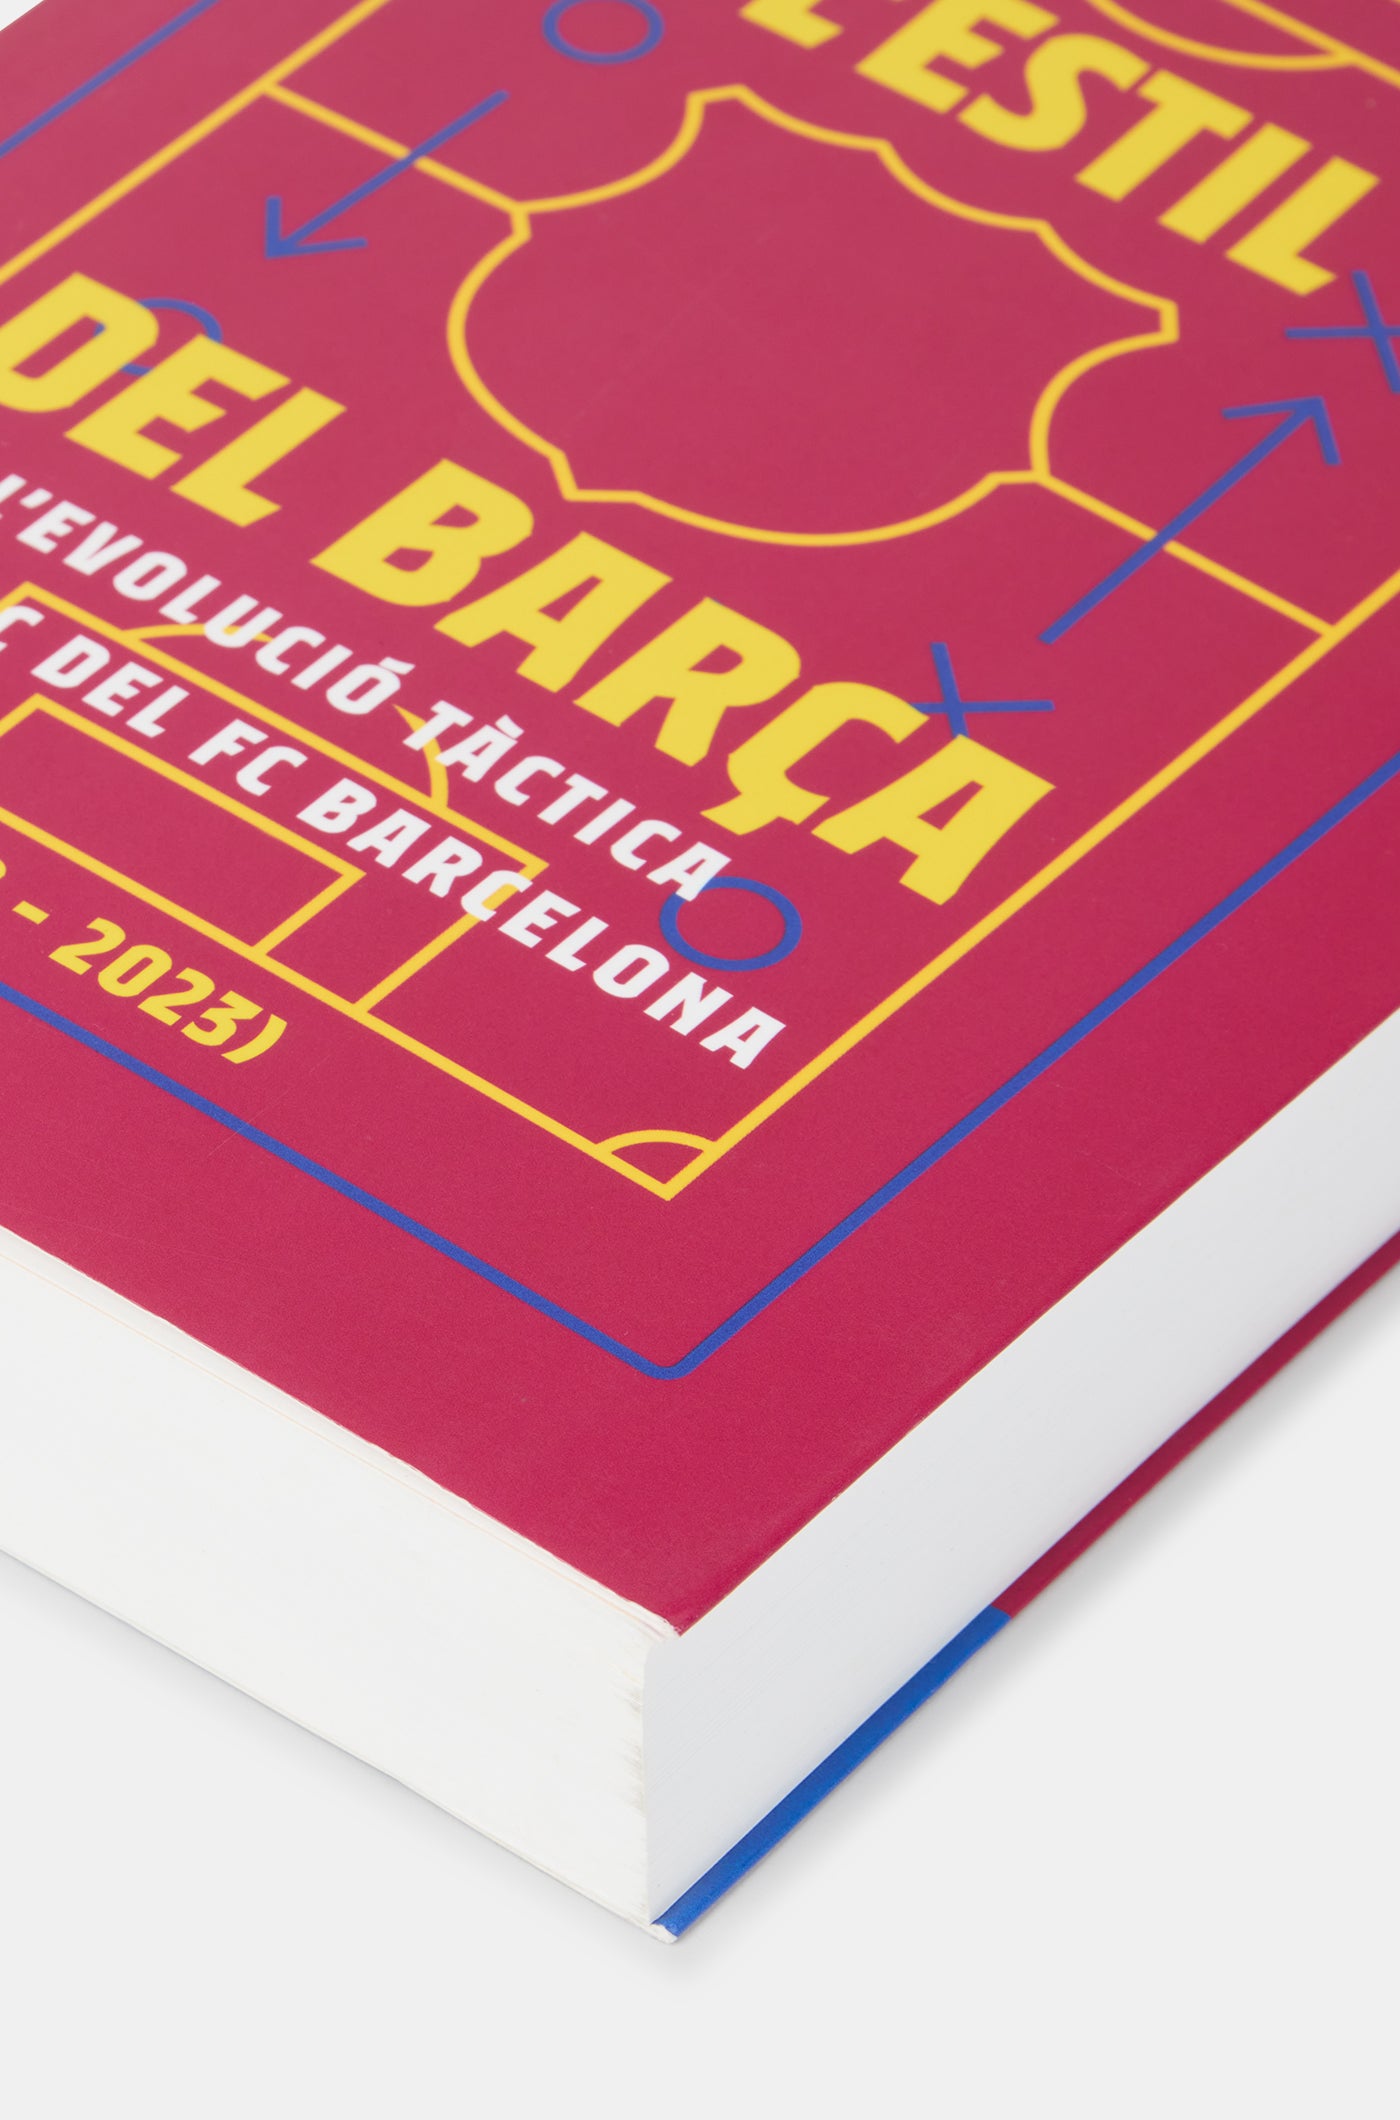 Llibre "L´estil del Barça"